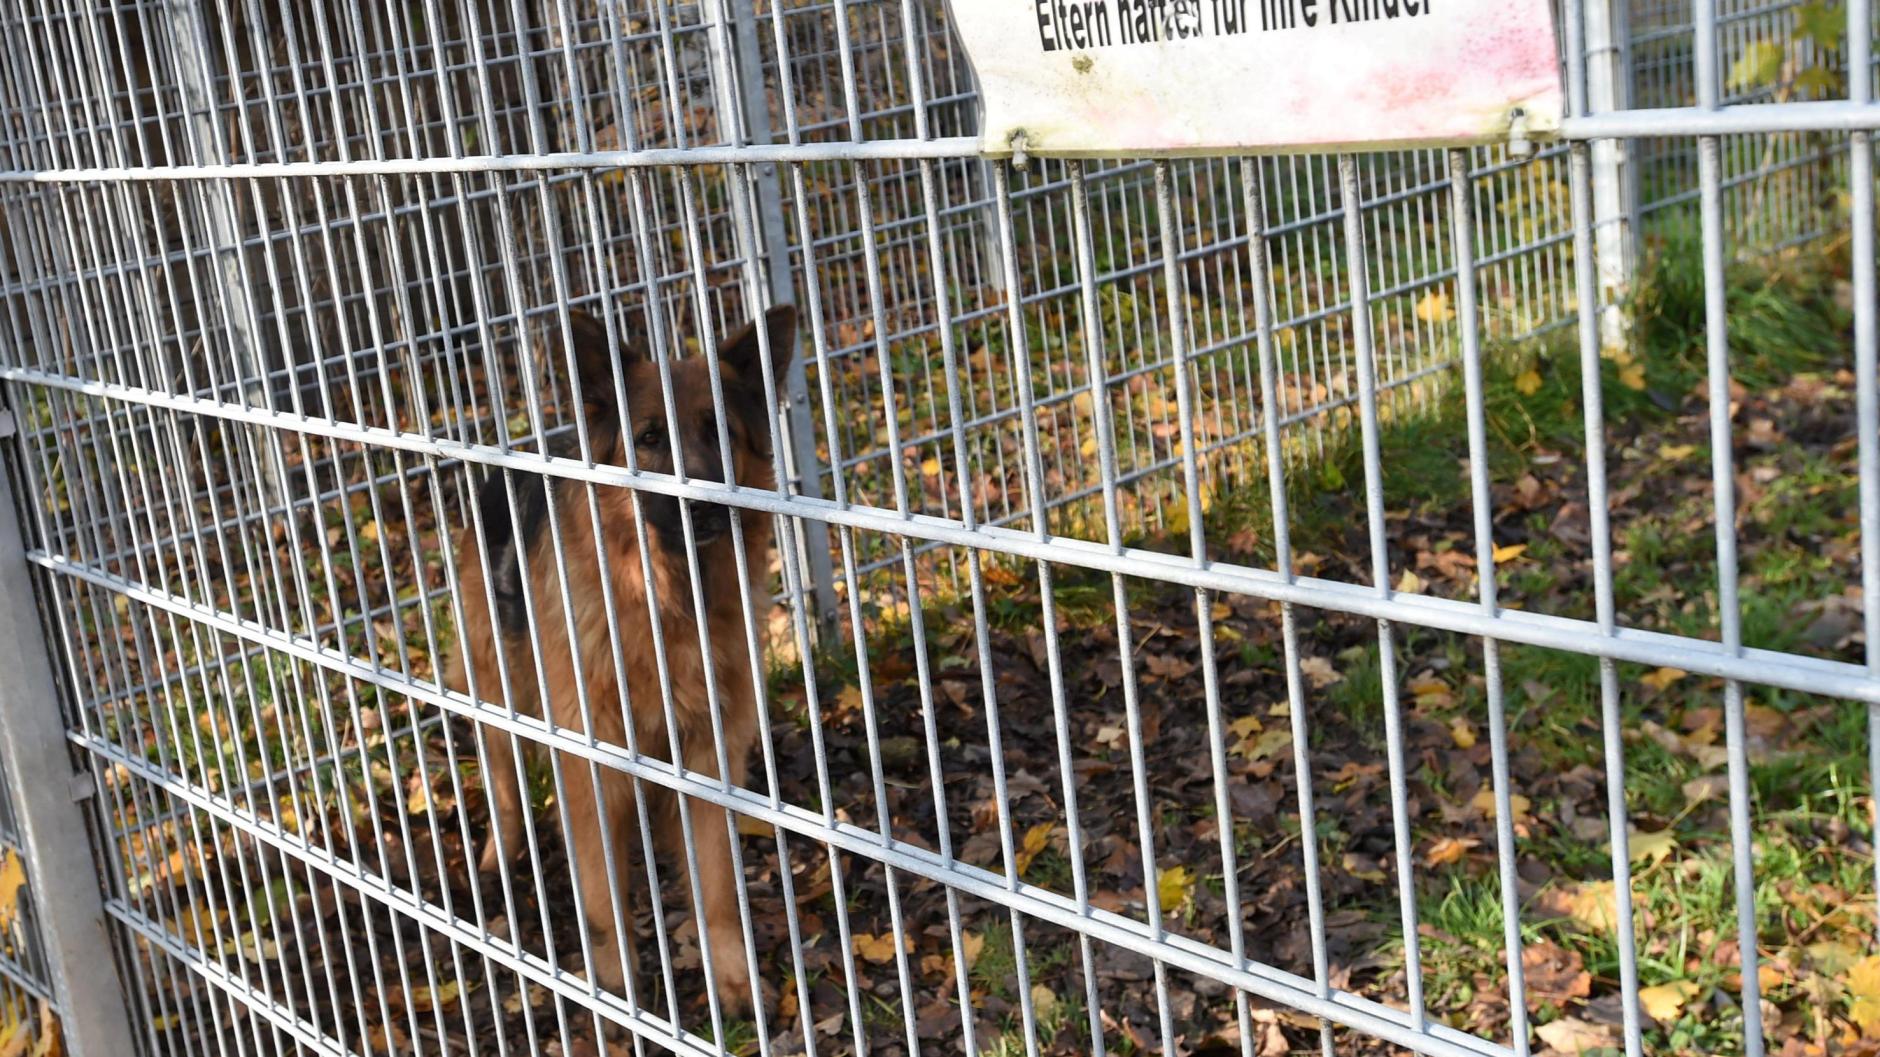 Gersthofen Hunde nach vielen Beschwerden weggenommen Frauchen klagt